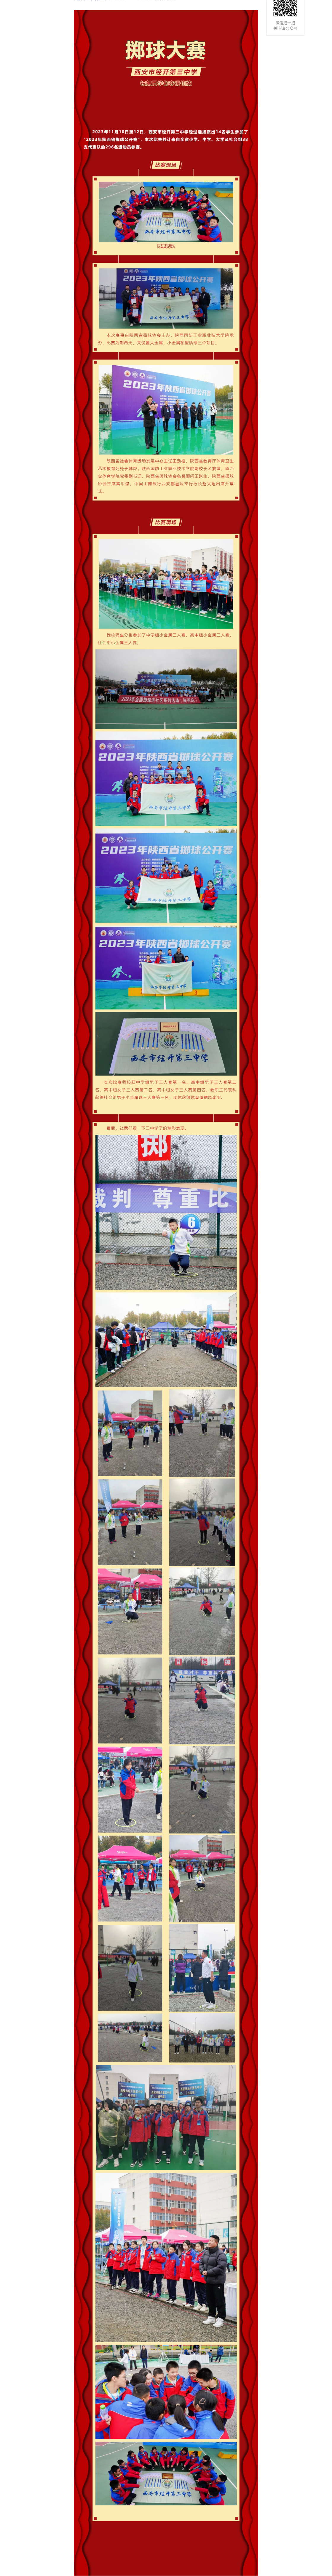 【光荣】祝贺我校在陕西省掷球公开赛中荣获佳绩